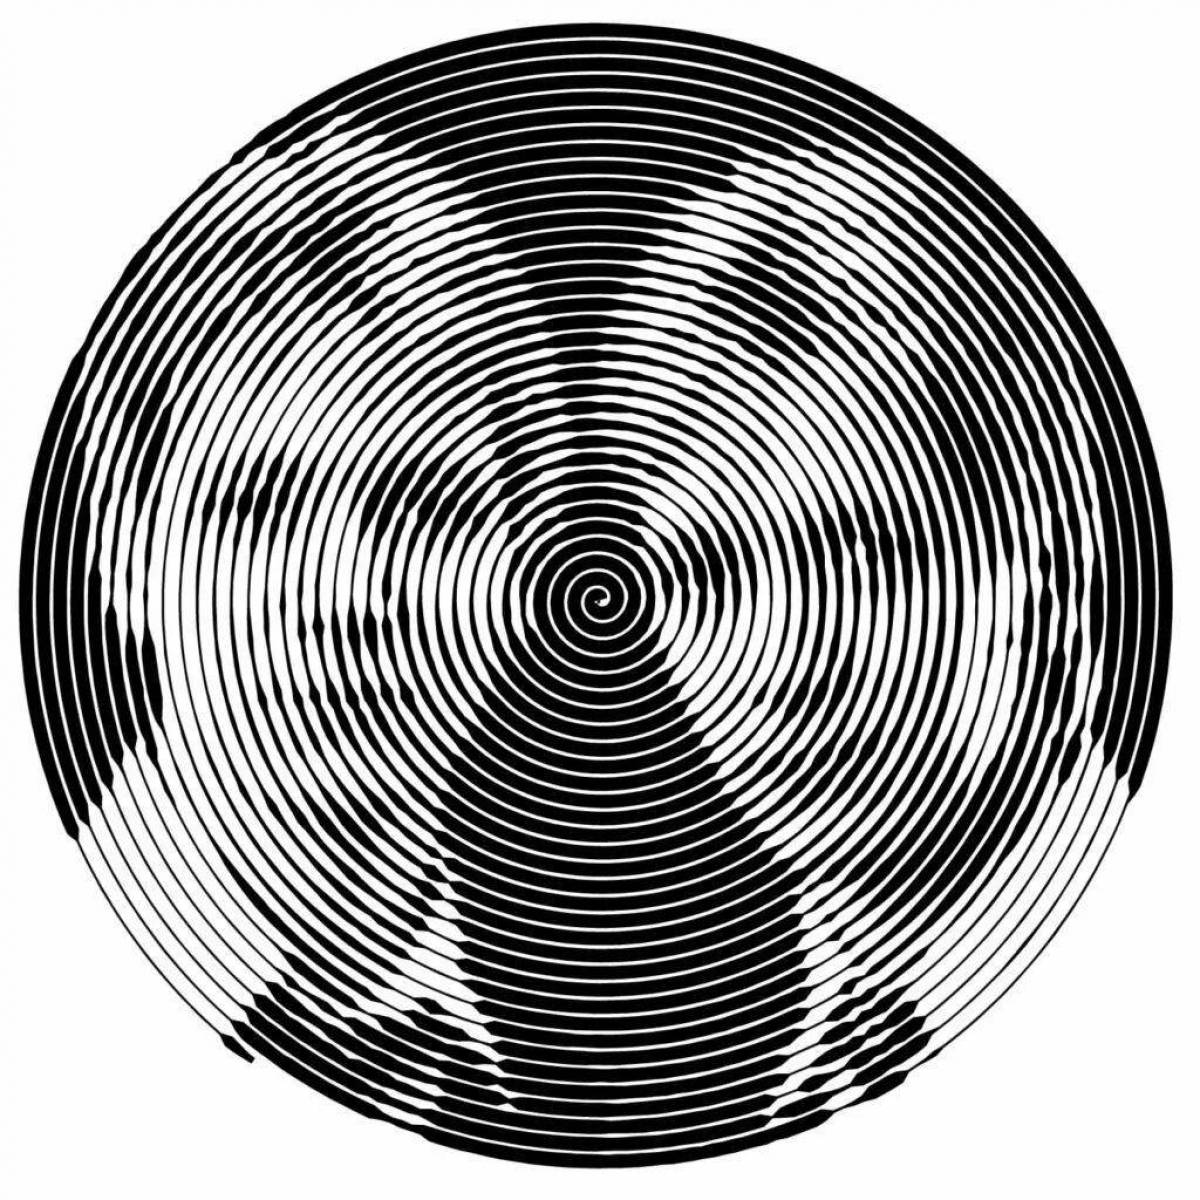 Юмористическая круговая раскраска «спираль гарри поттера»